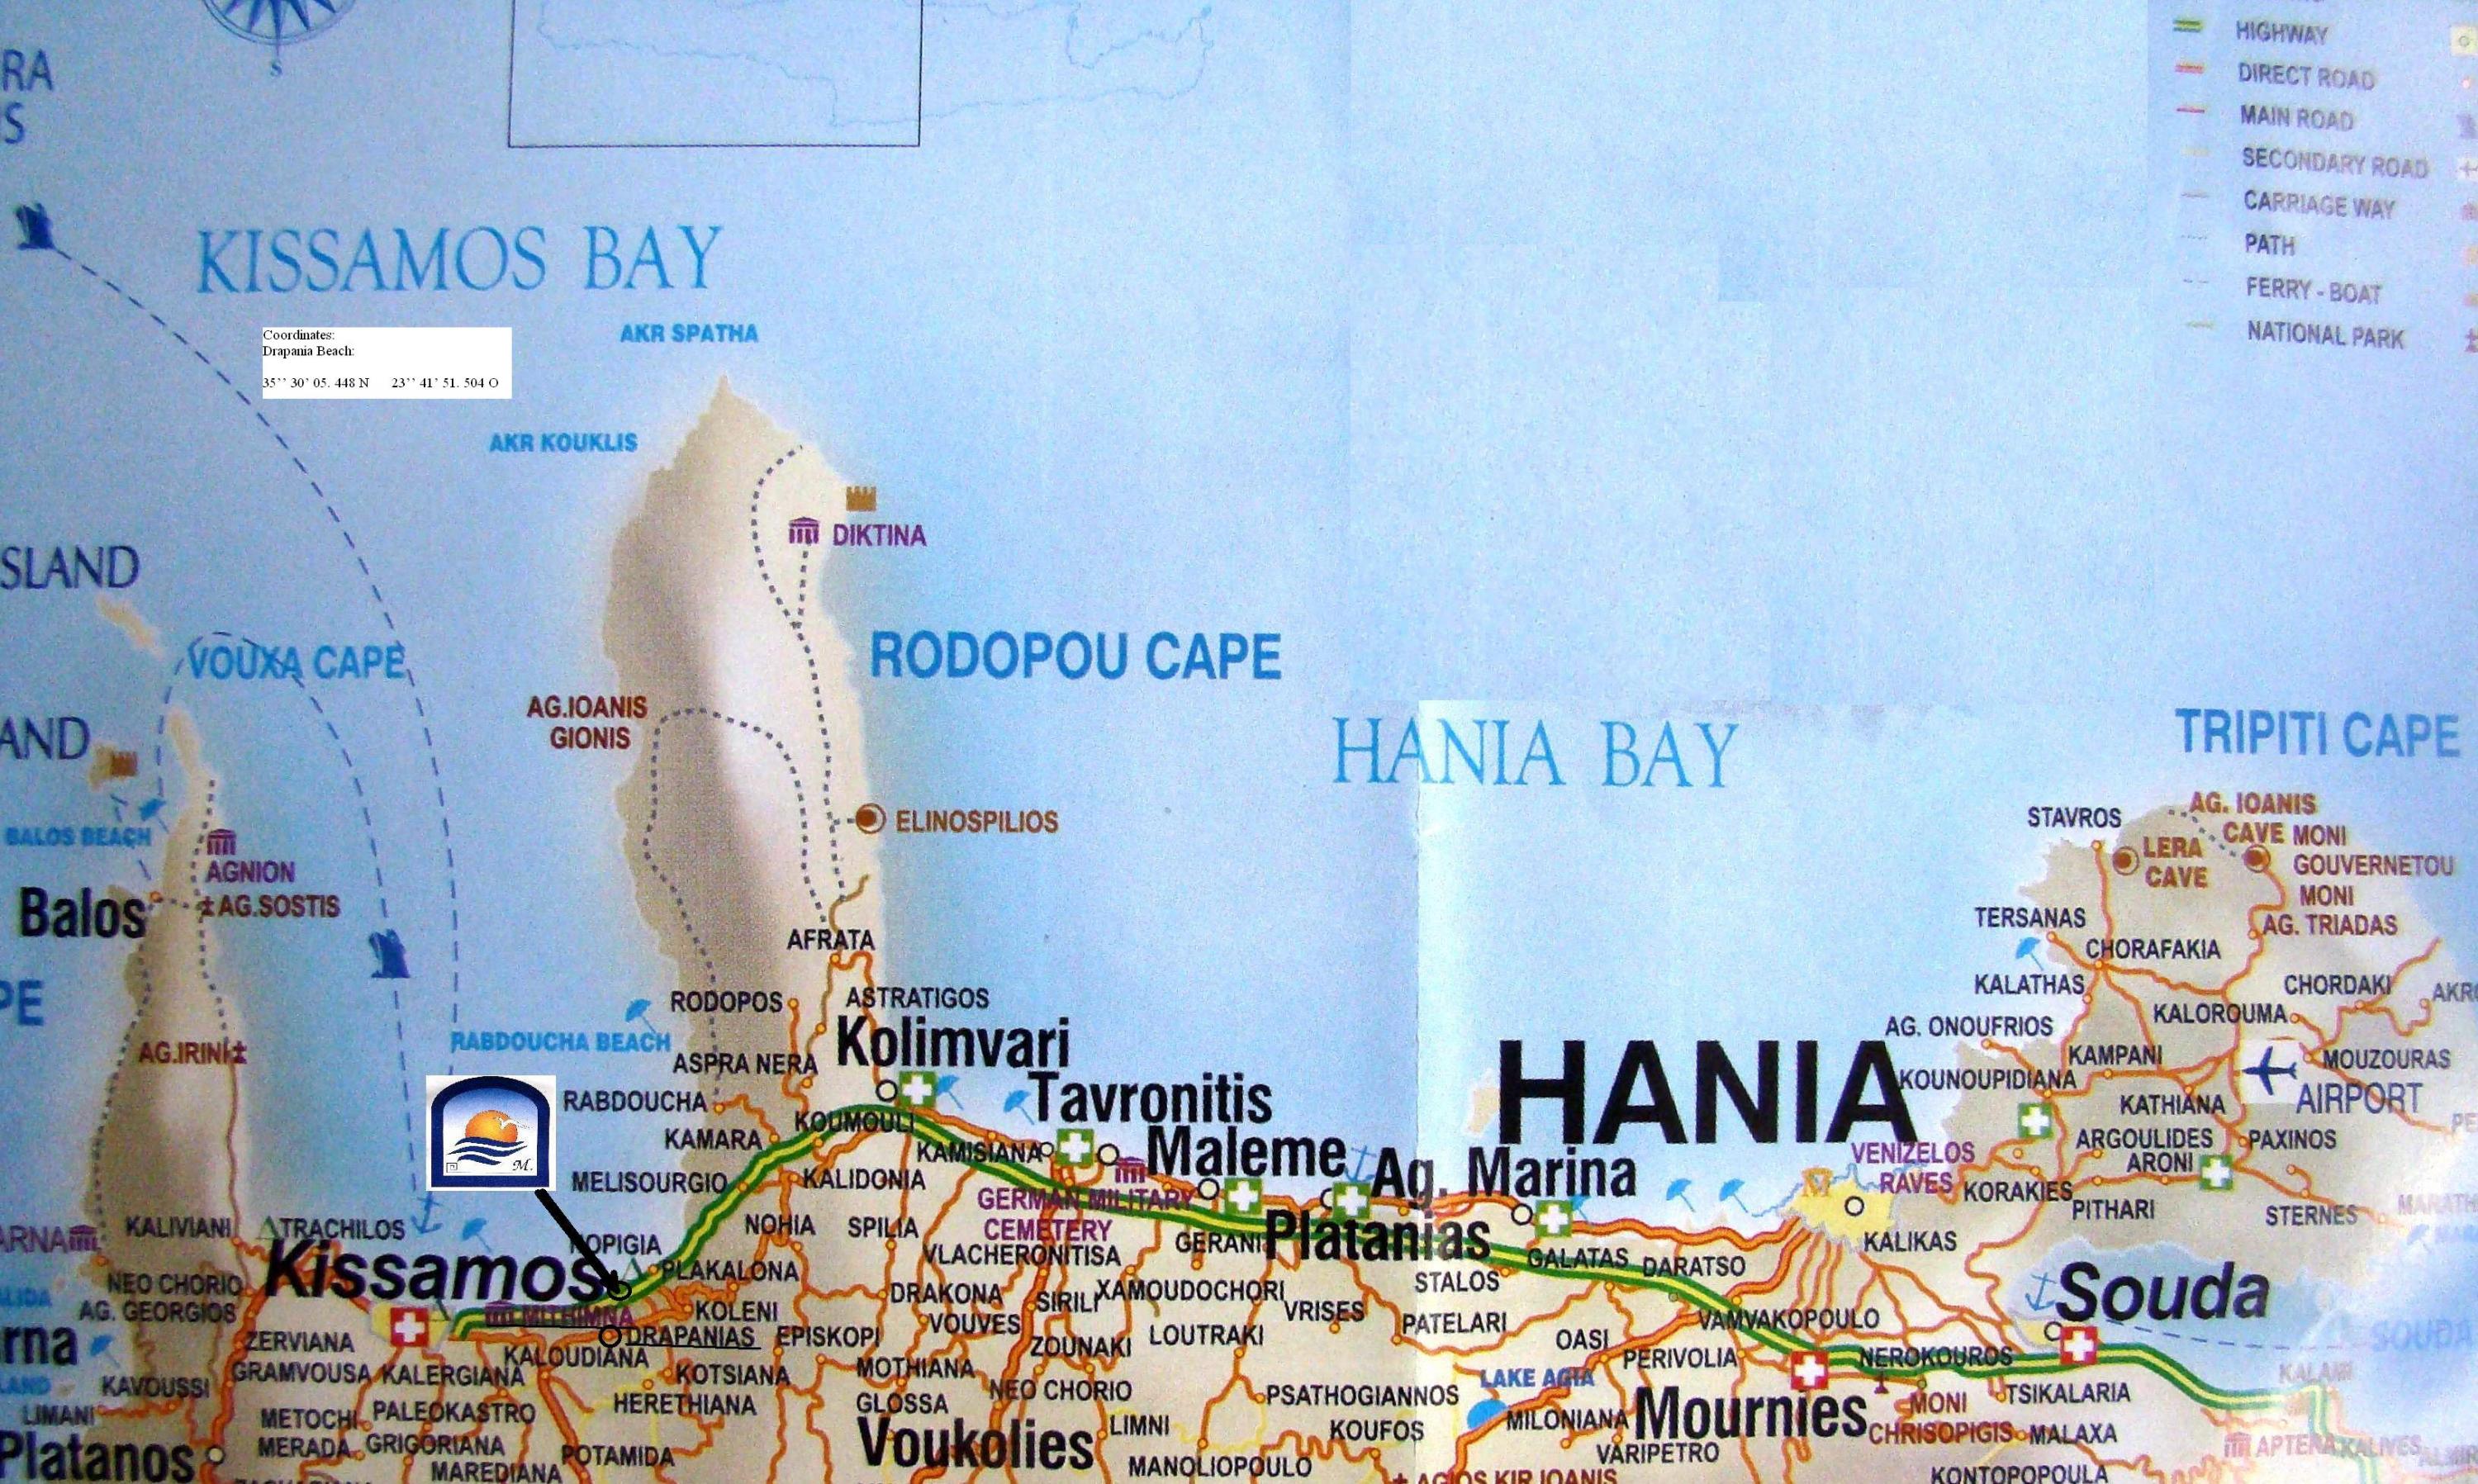 Χάρτης από τον οδηγό προβολής των Δήμων: Κισάμου- Μηθύμνης- Ιναχωρίου"